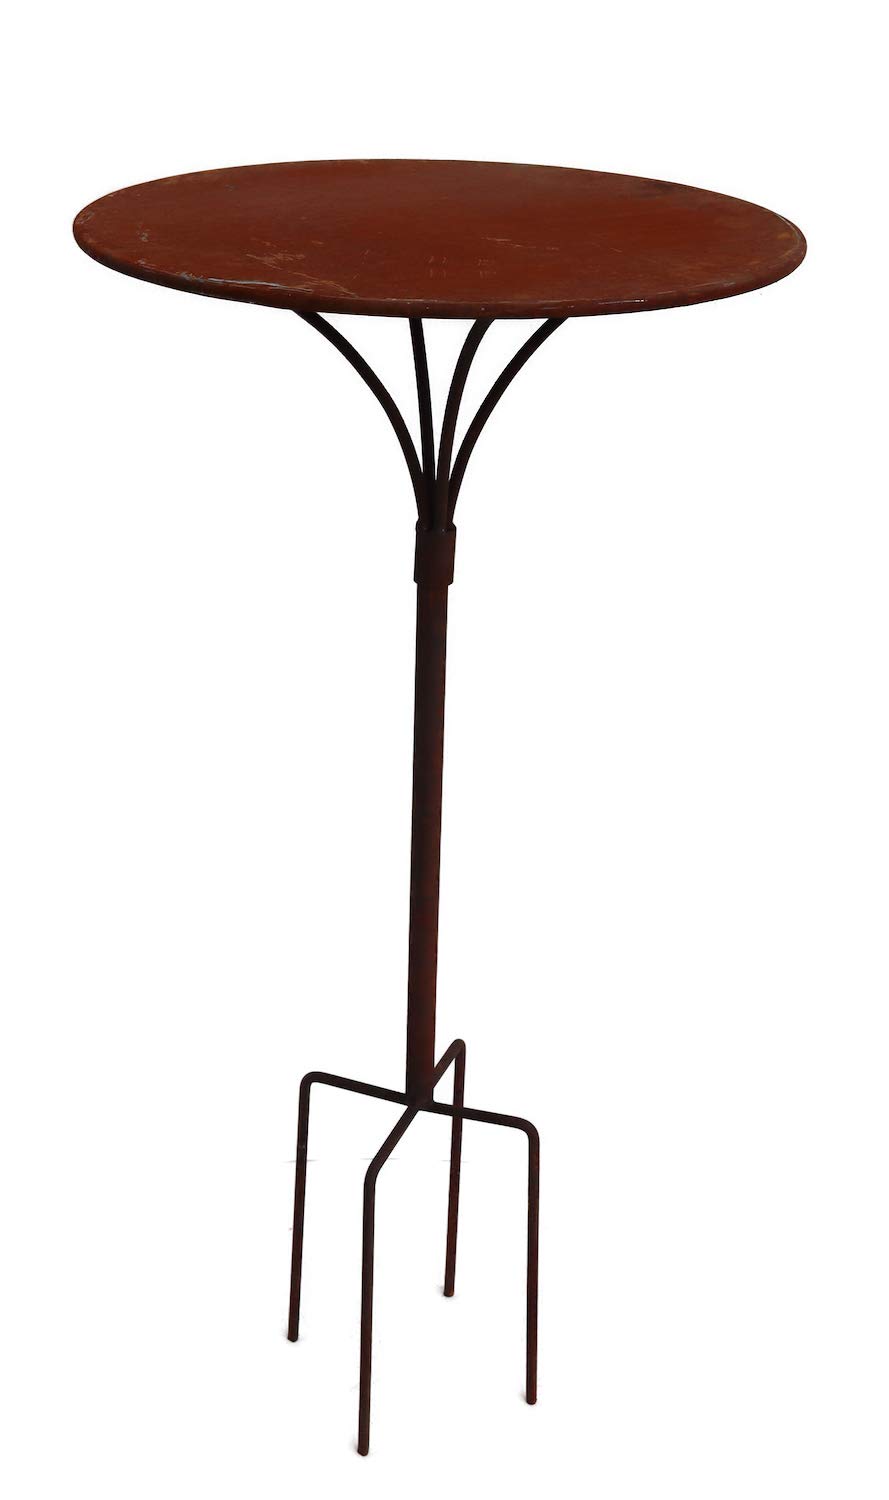 Hirsch Terracotta Gartenstecktisch stabil und massiv Deko Tisch aus Metall in Naturrost, Tisch Blumenhocker Beistelltisch (Ø:55cm Höhe:80cm)